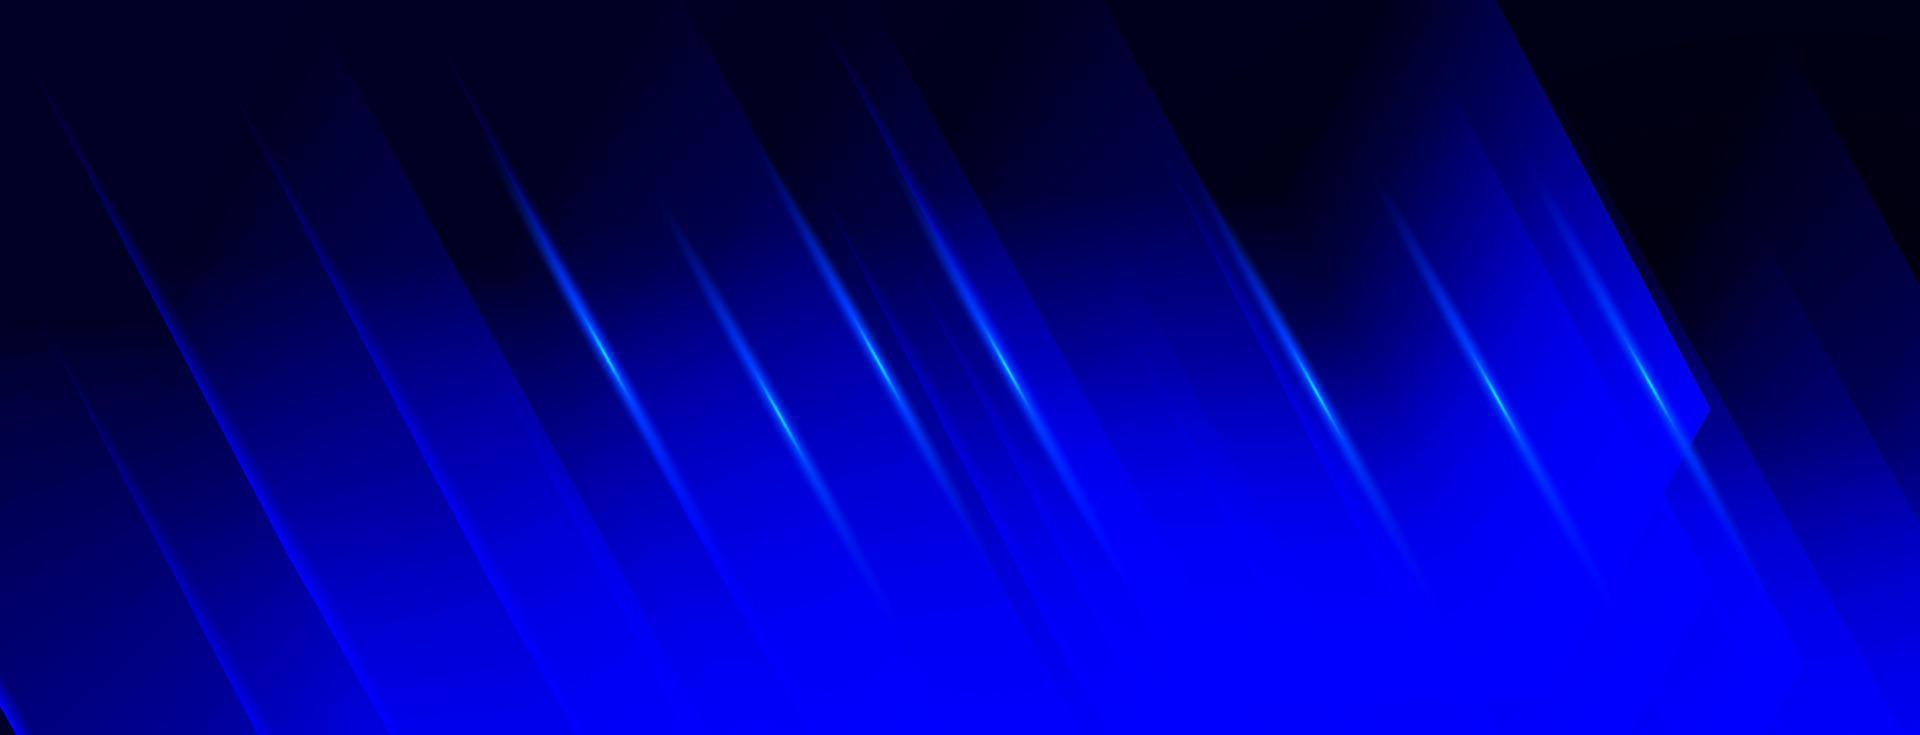 futuristische bewegung abstrakte blaue farbpräsentationsvorlage isolierter vektor